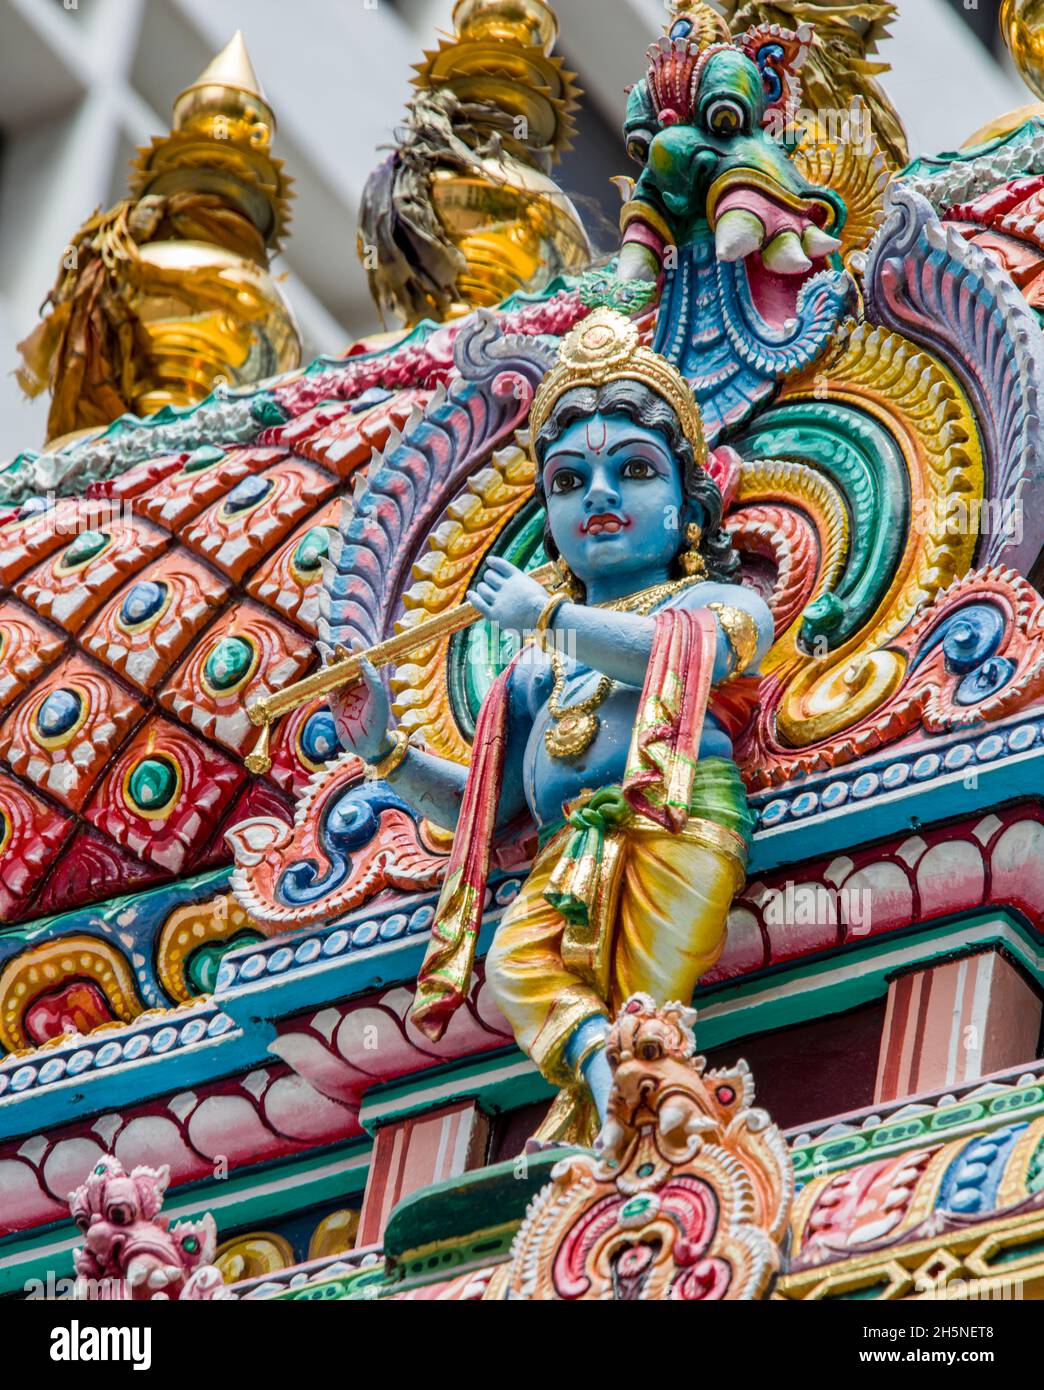 Estatua de Krishnan del gopuram del Templo de Sri Krishnan. Es un templo hindú en Singapur. Construido en 1870 y considerado como monumento nacional de Singapur Foto de stock